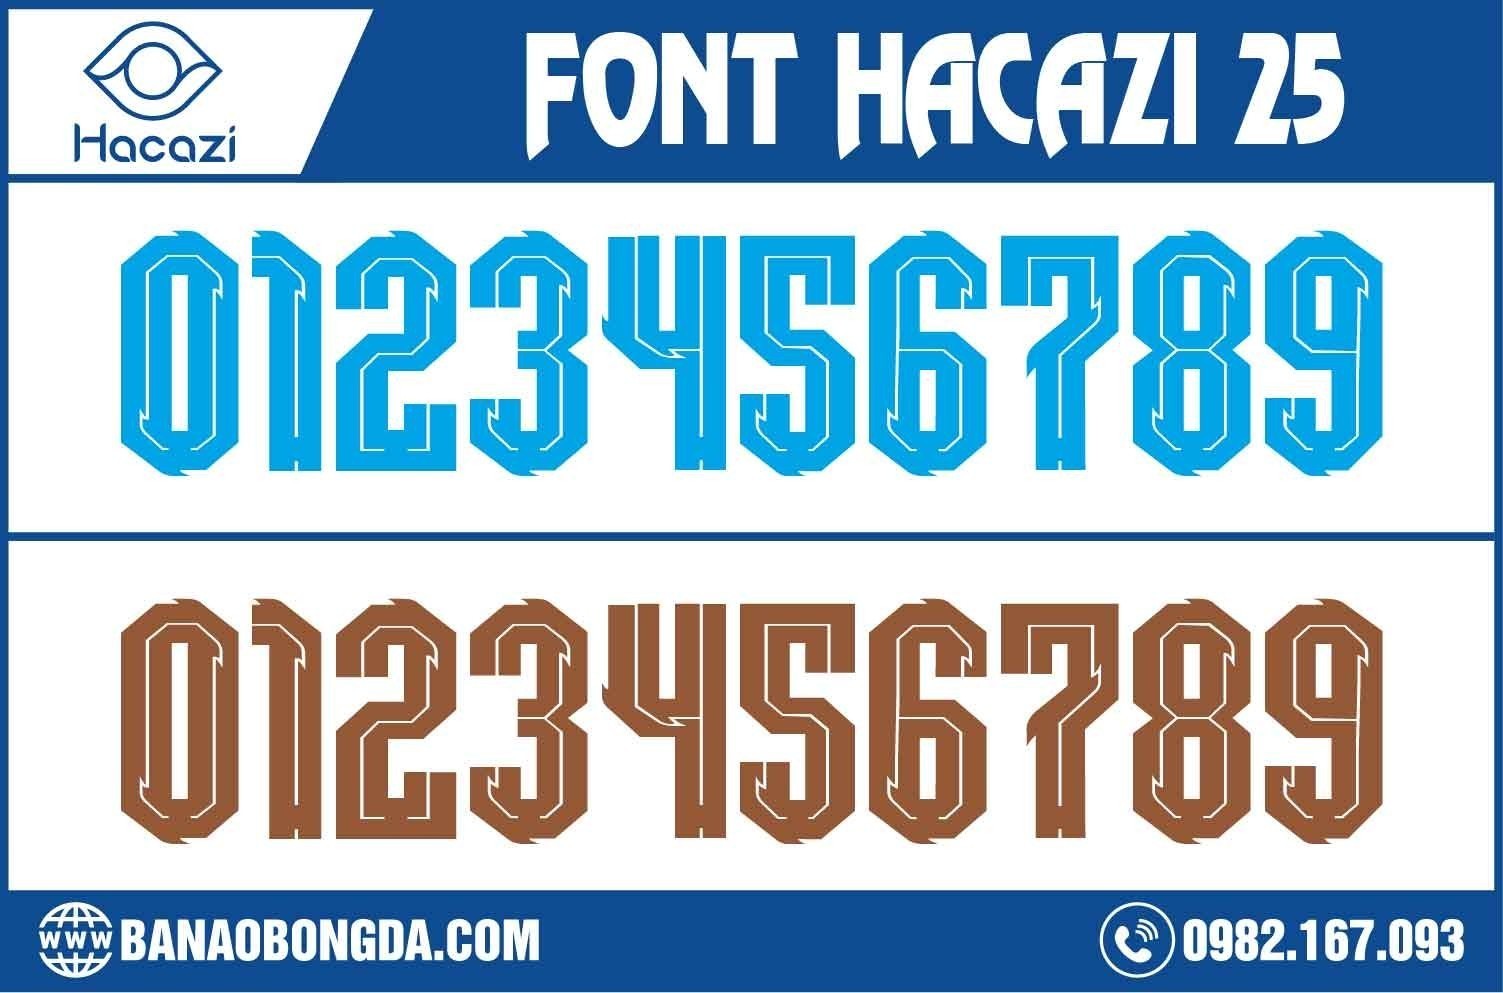 Bộ font số áo bóng đá 25 xuất sắc đã được ra mắt tại shop Hacazi Sport. Được chon tông màu xanh và nâu làm phông màu chính cho bộ. 